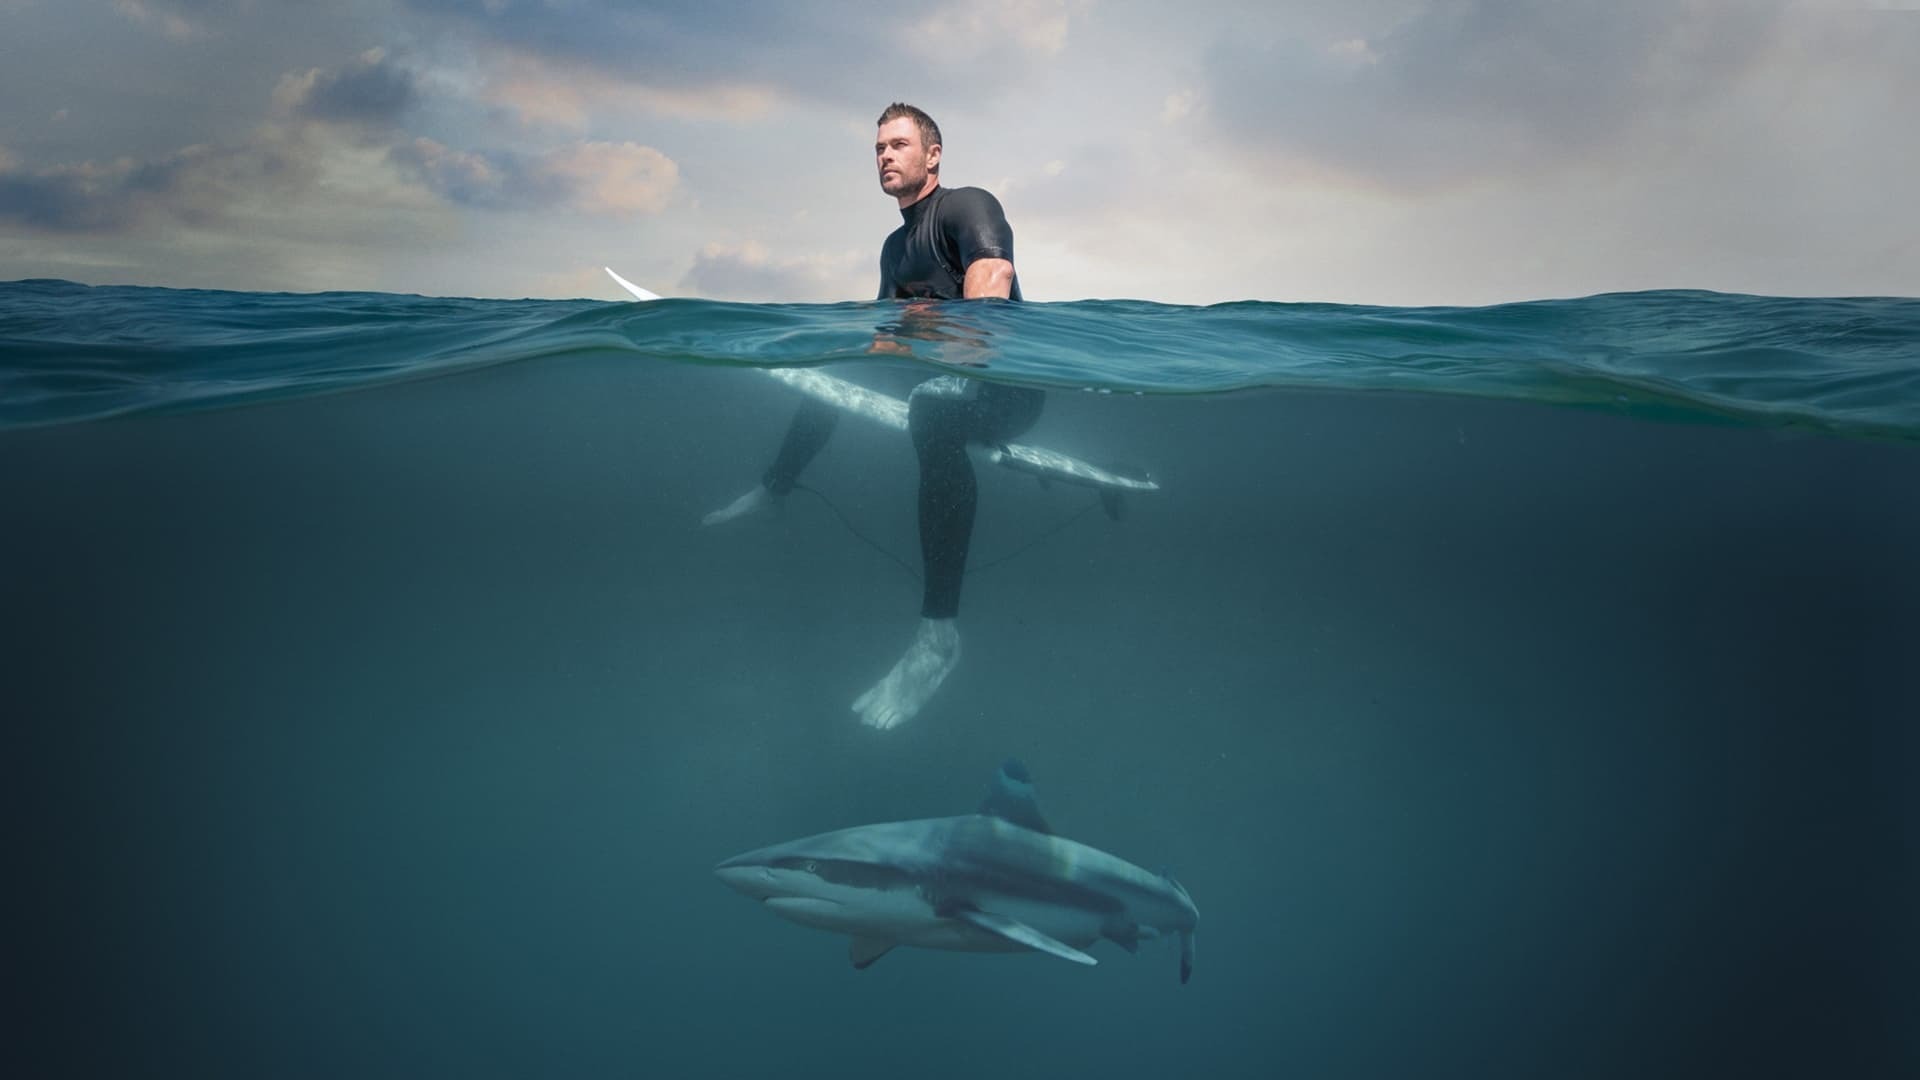 „შარკ ბიჩი“ კრის ჰემსვორთთან ერთად / Shark Beach with Chris Hemsworth